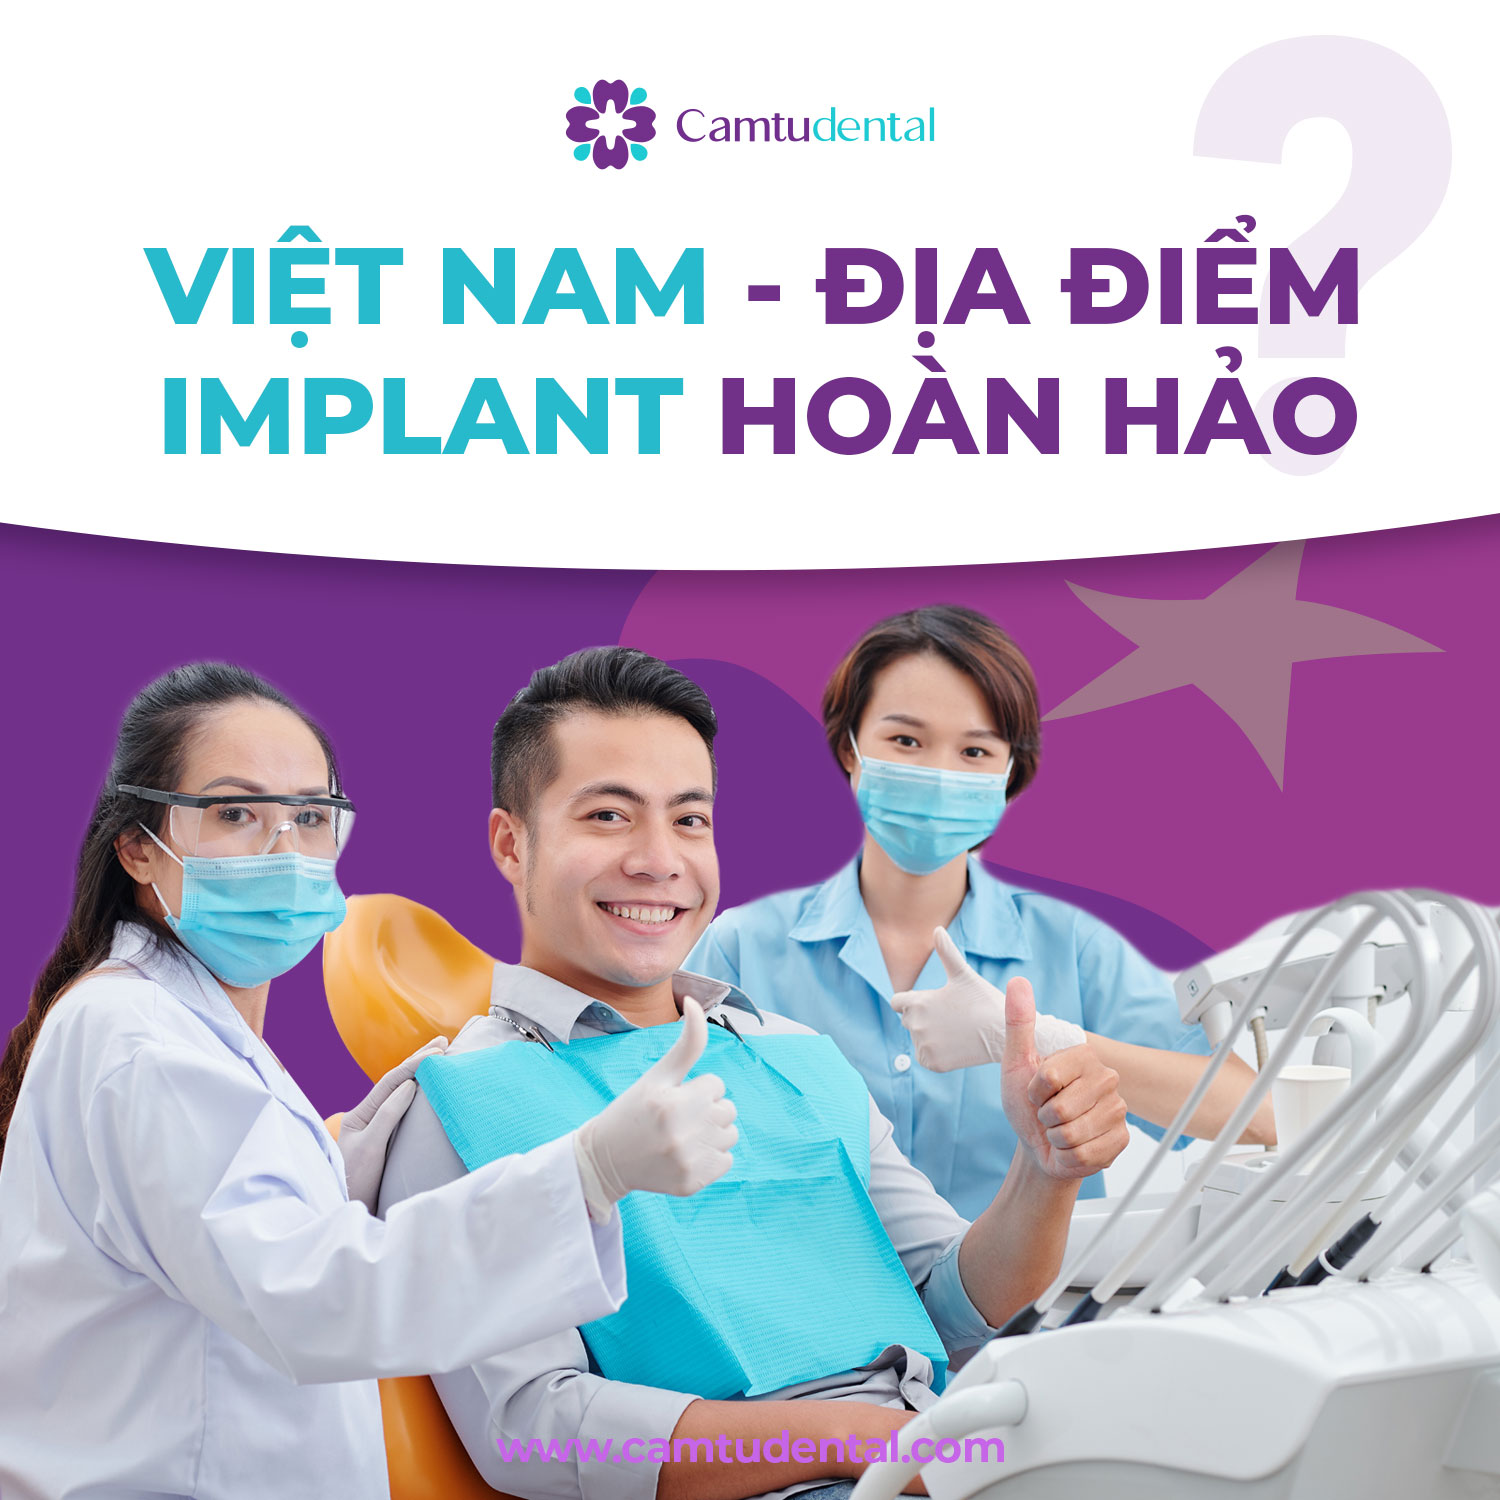 Việt Nam là địa điểm trồng răng Implant hoàn hảo dành cho những ai quan tâm tới phương pháp này